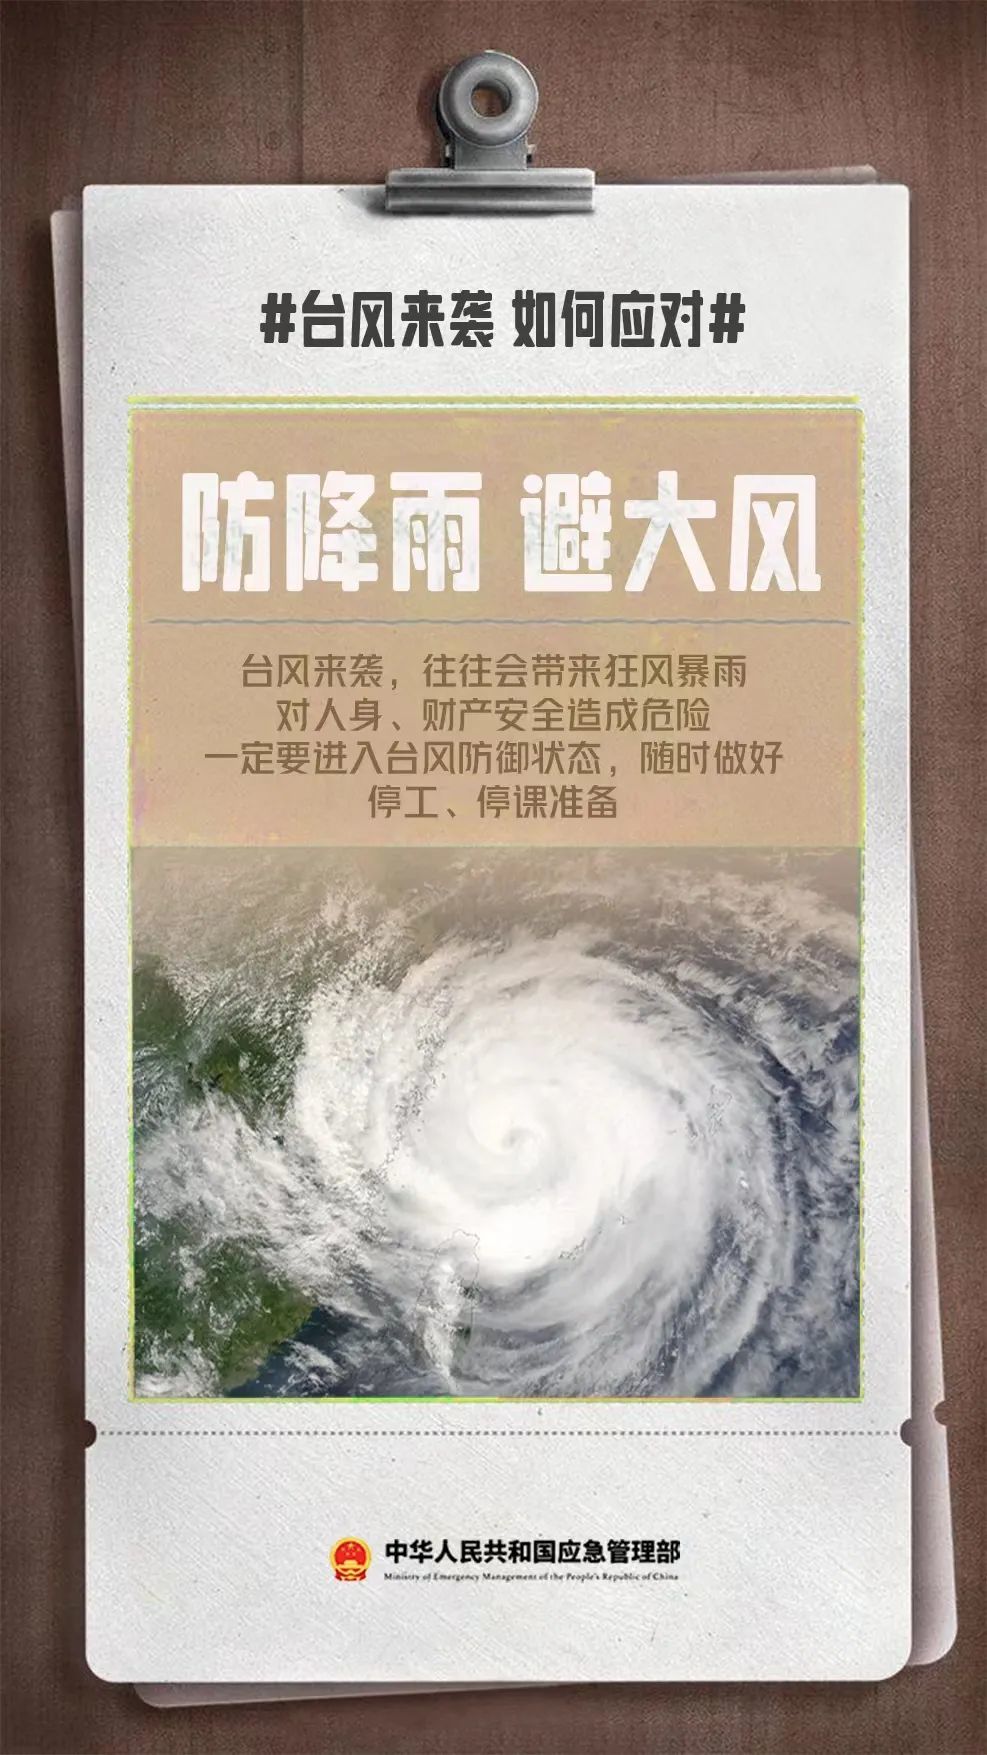 来源：海口发布综合中央气象台、海口市气象台、中华人民共和国应急管理部